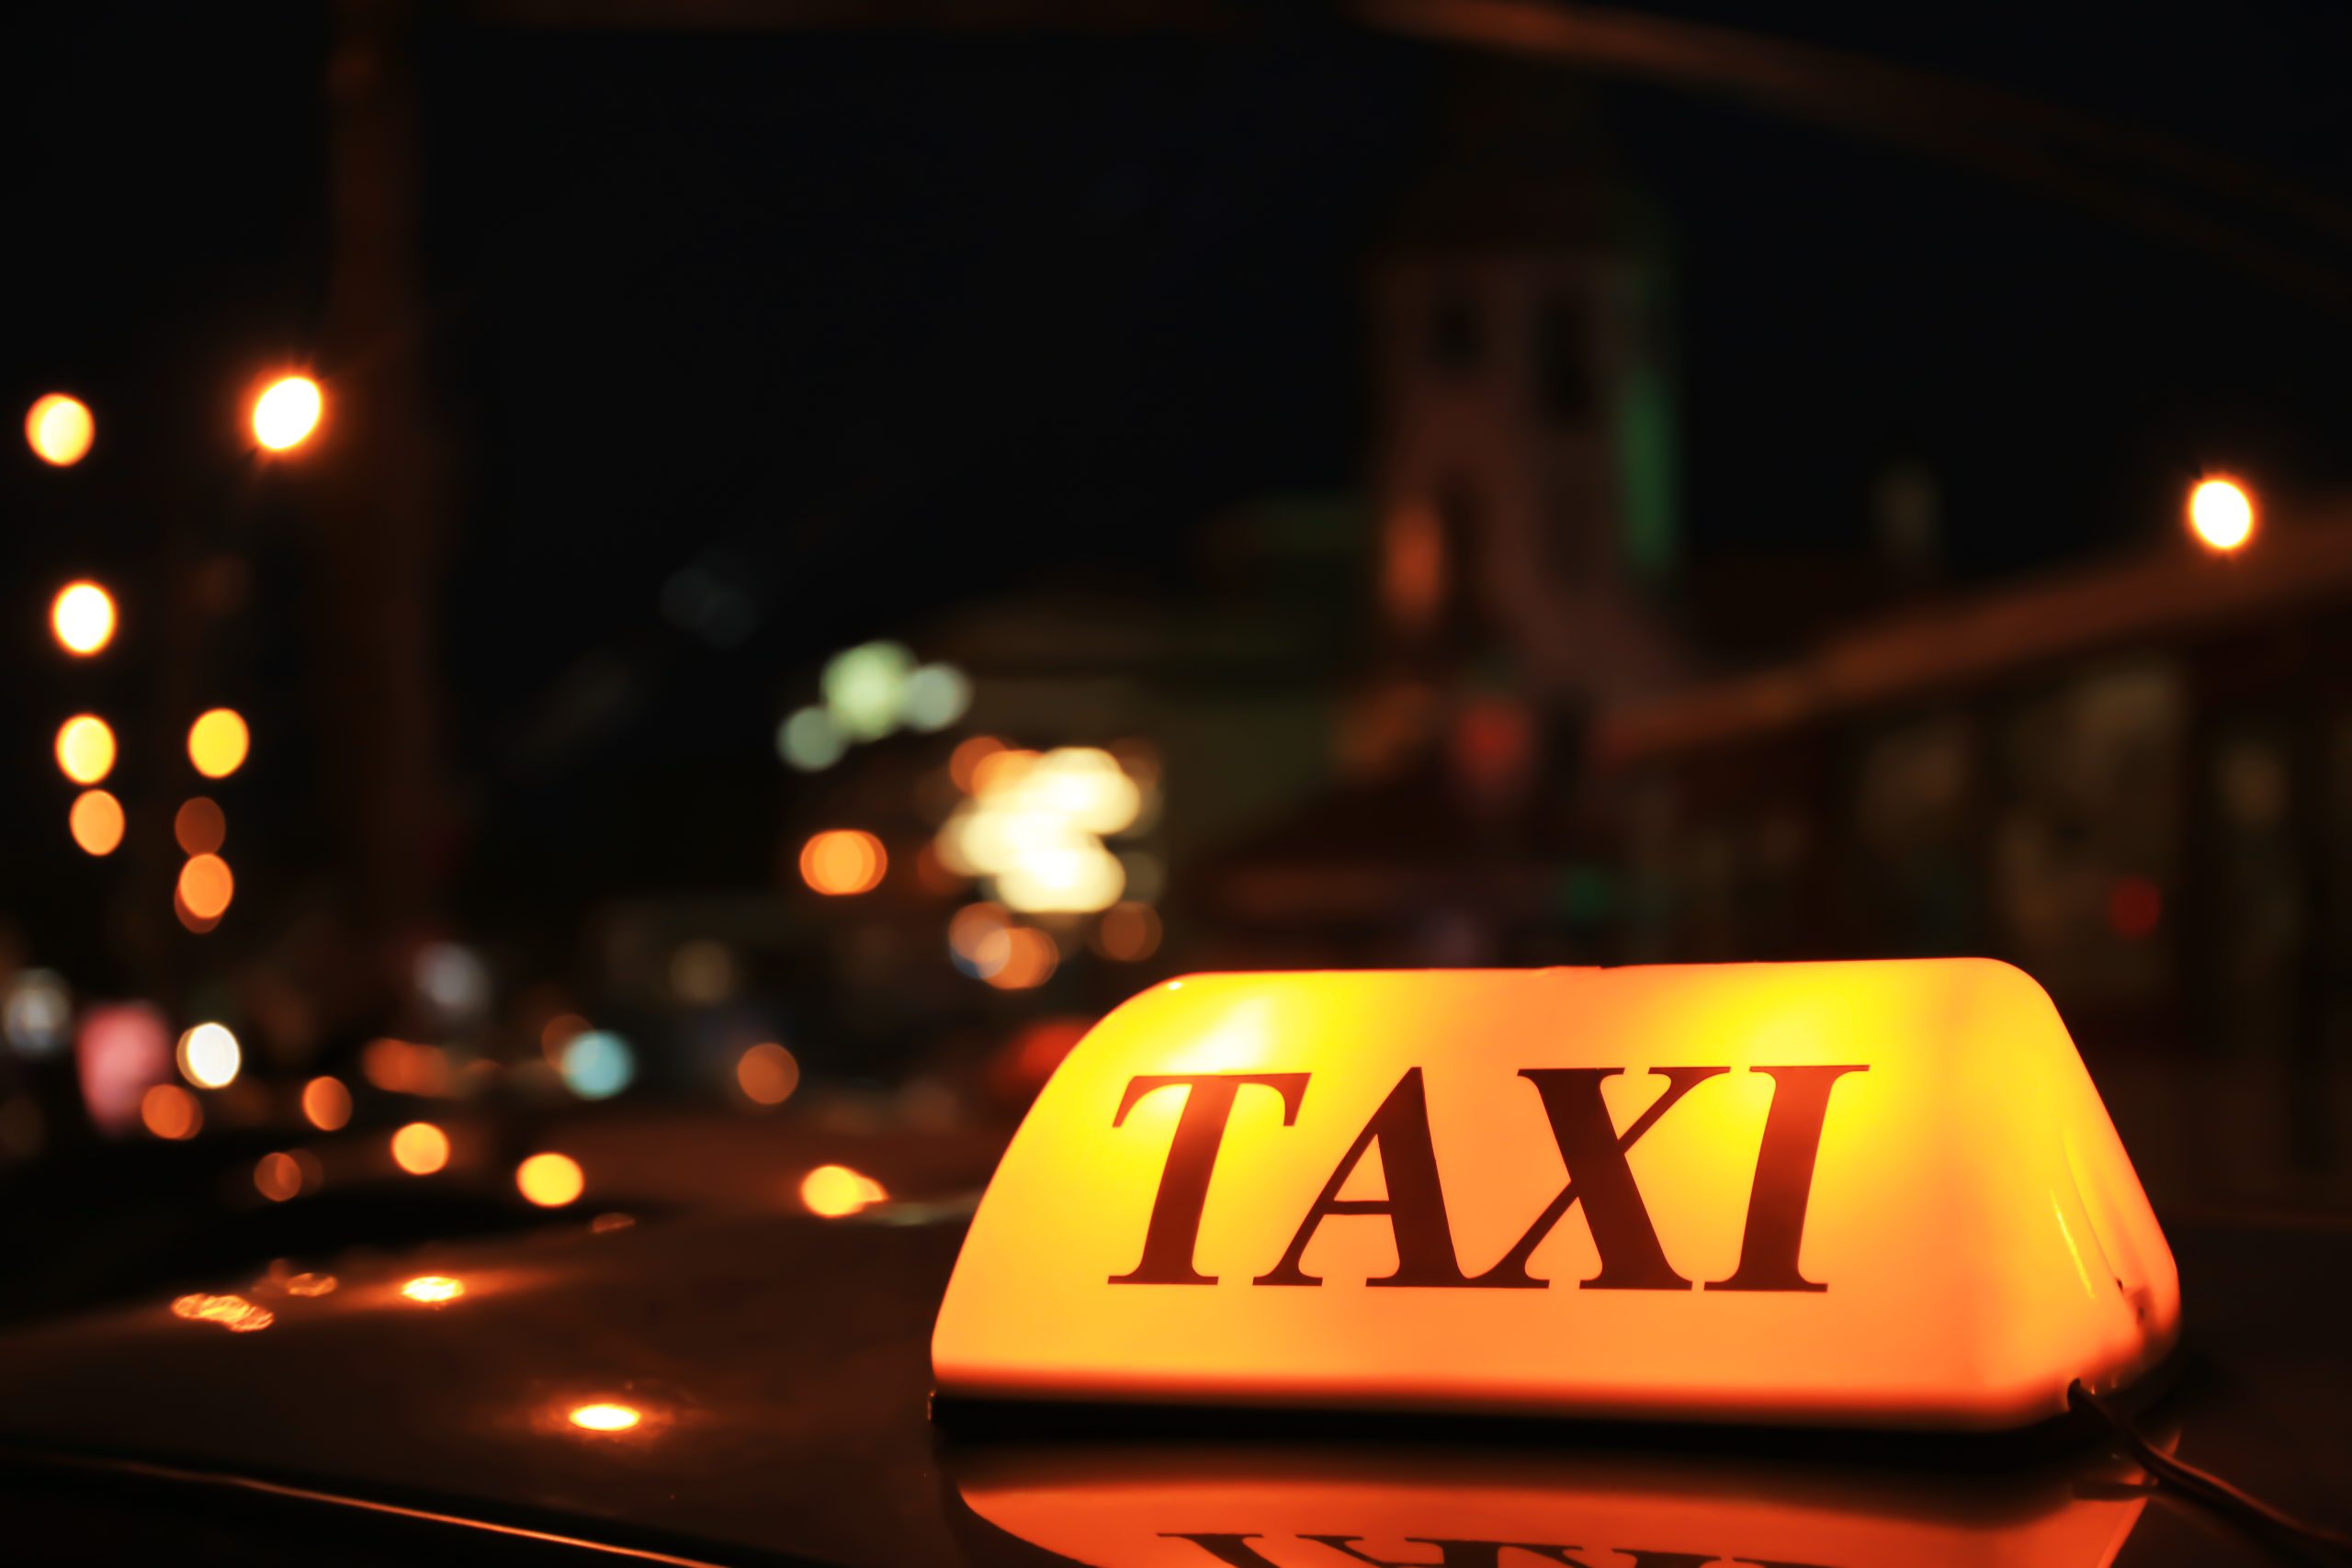 Утвержден порядок доступа ФСБ к базам данных служб заказов такси